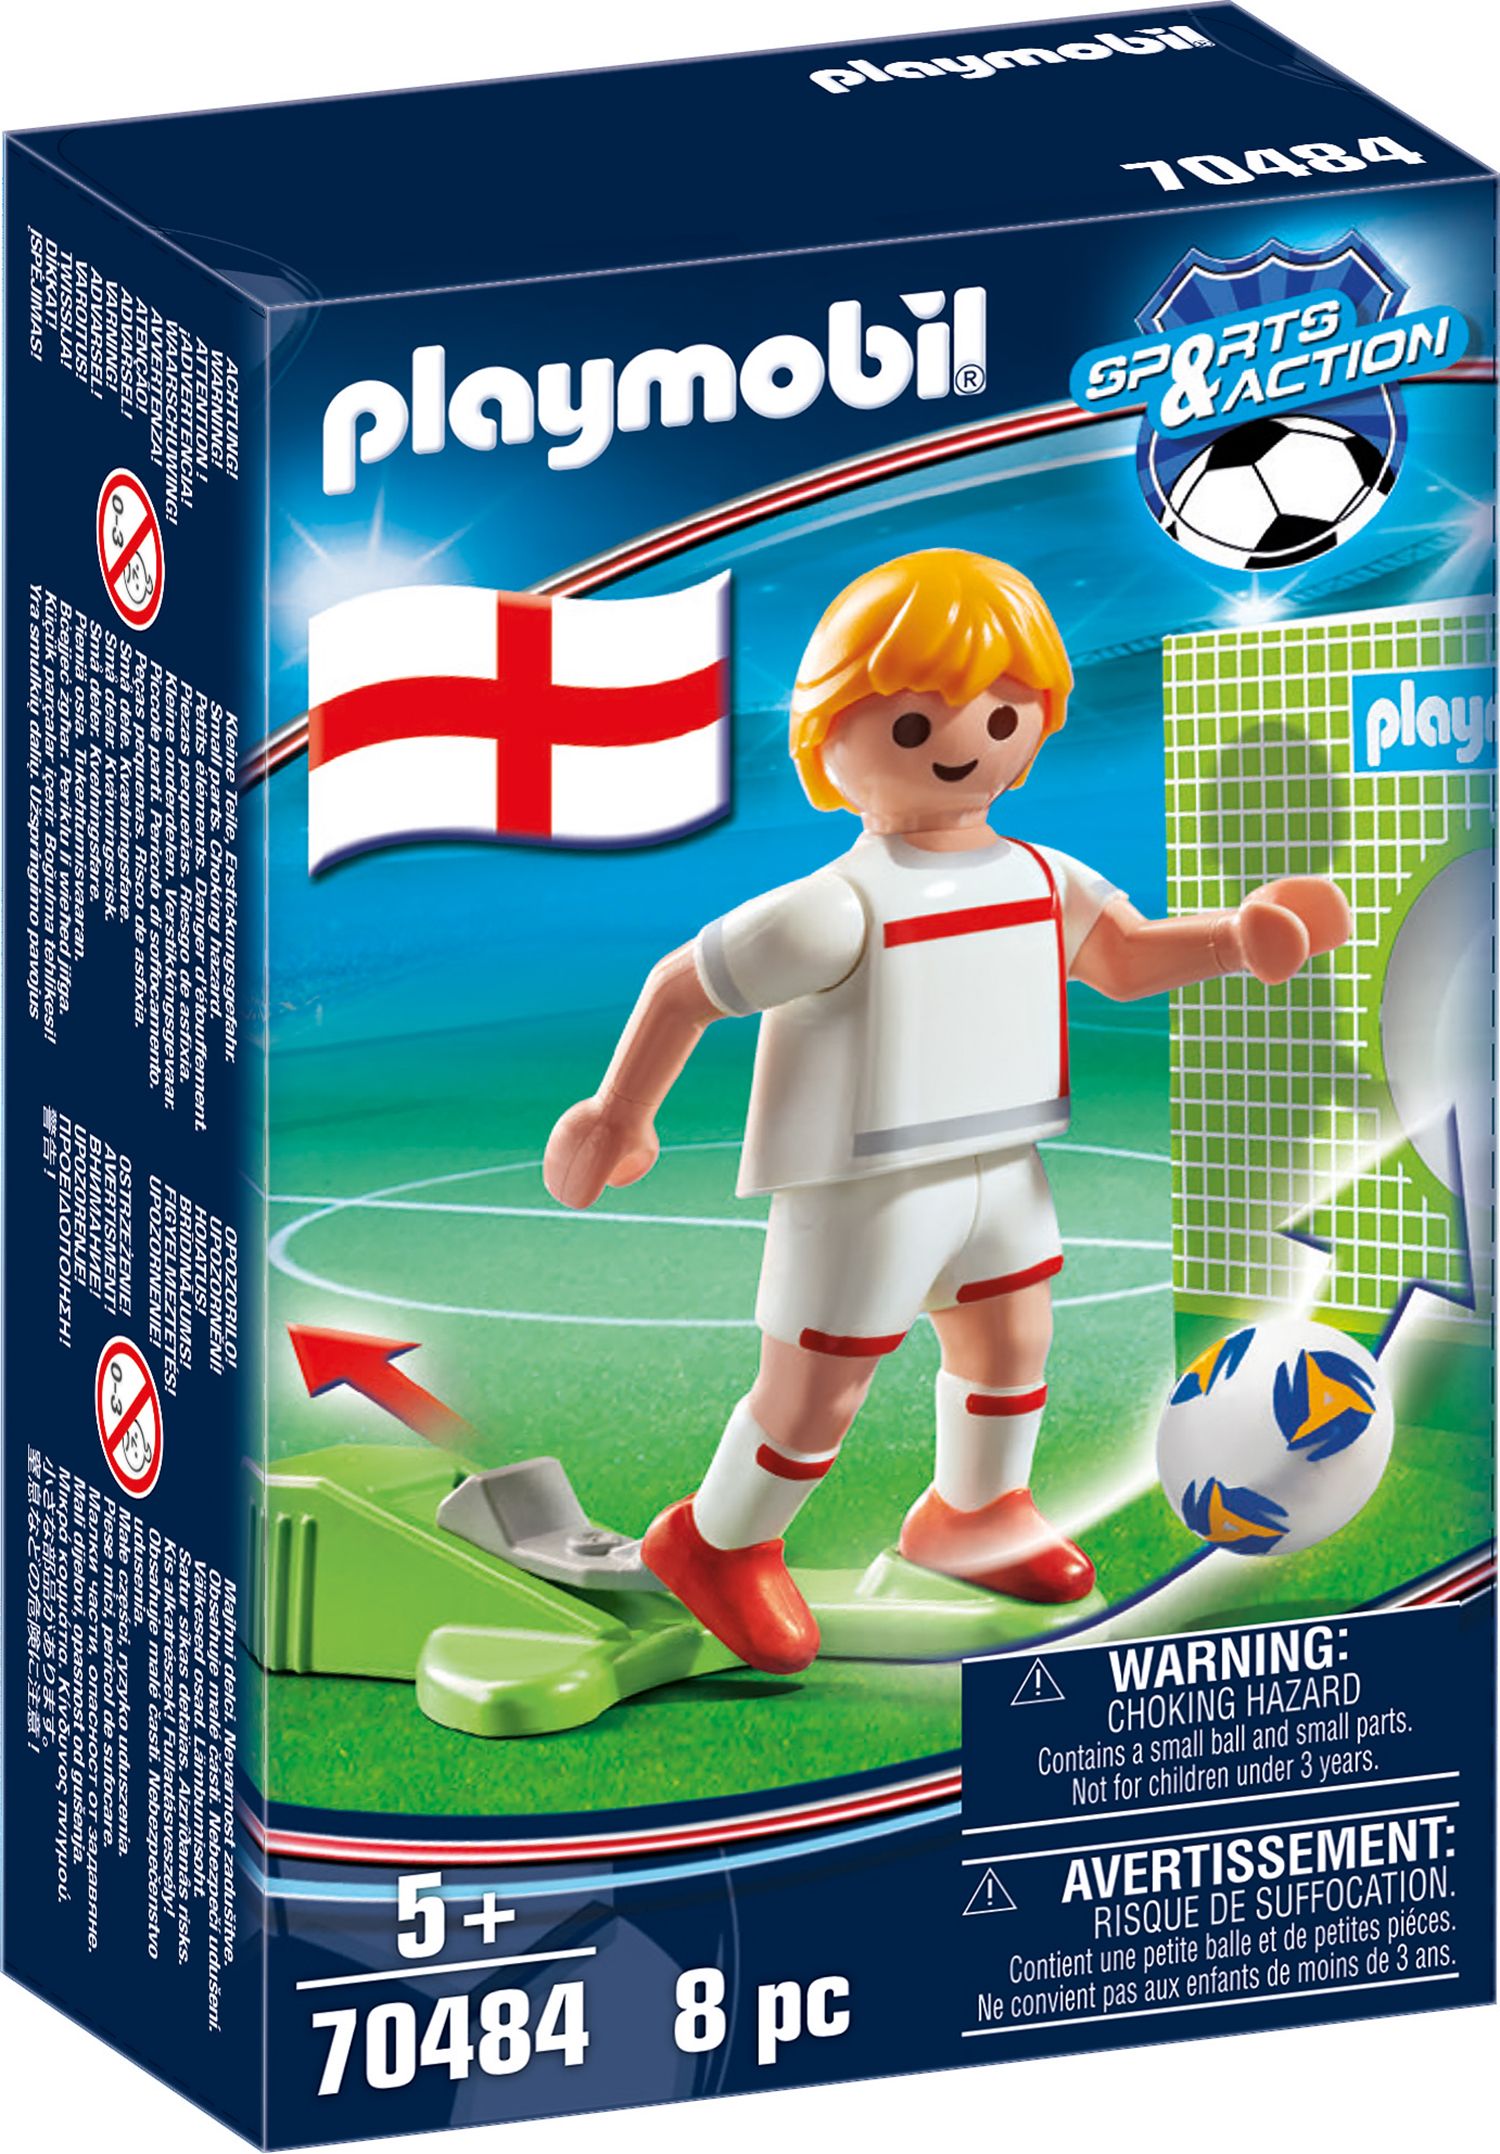 PLAYMOBIL 70484 - Sports & Action - Nationalspieler England von geobra Brandstätter Stiftung & Co. KG